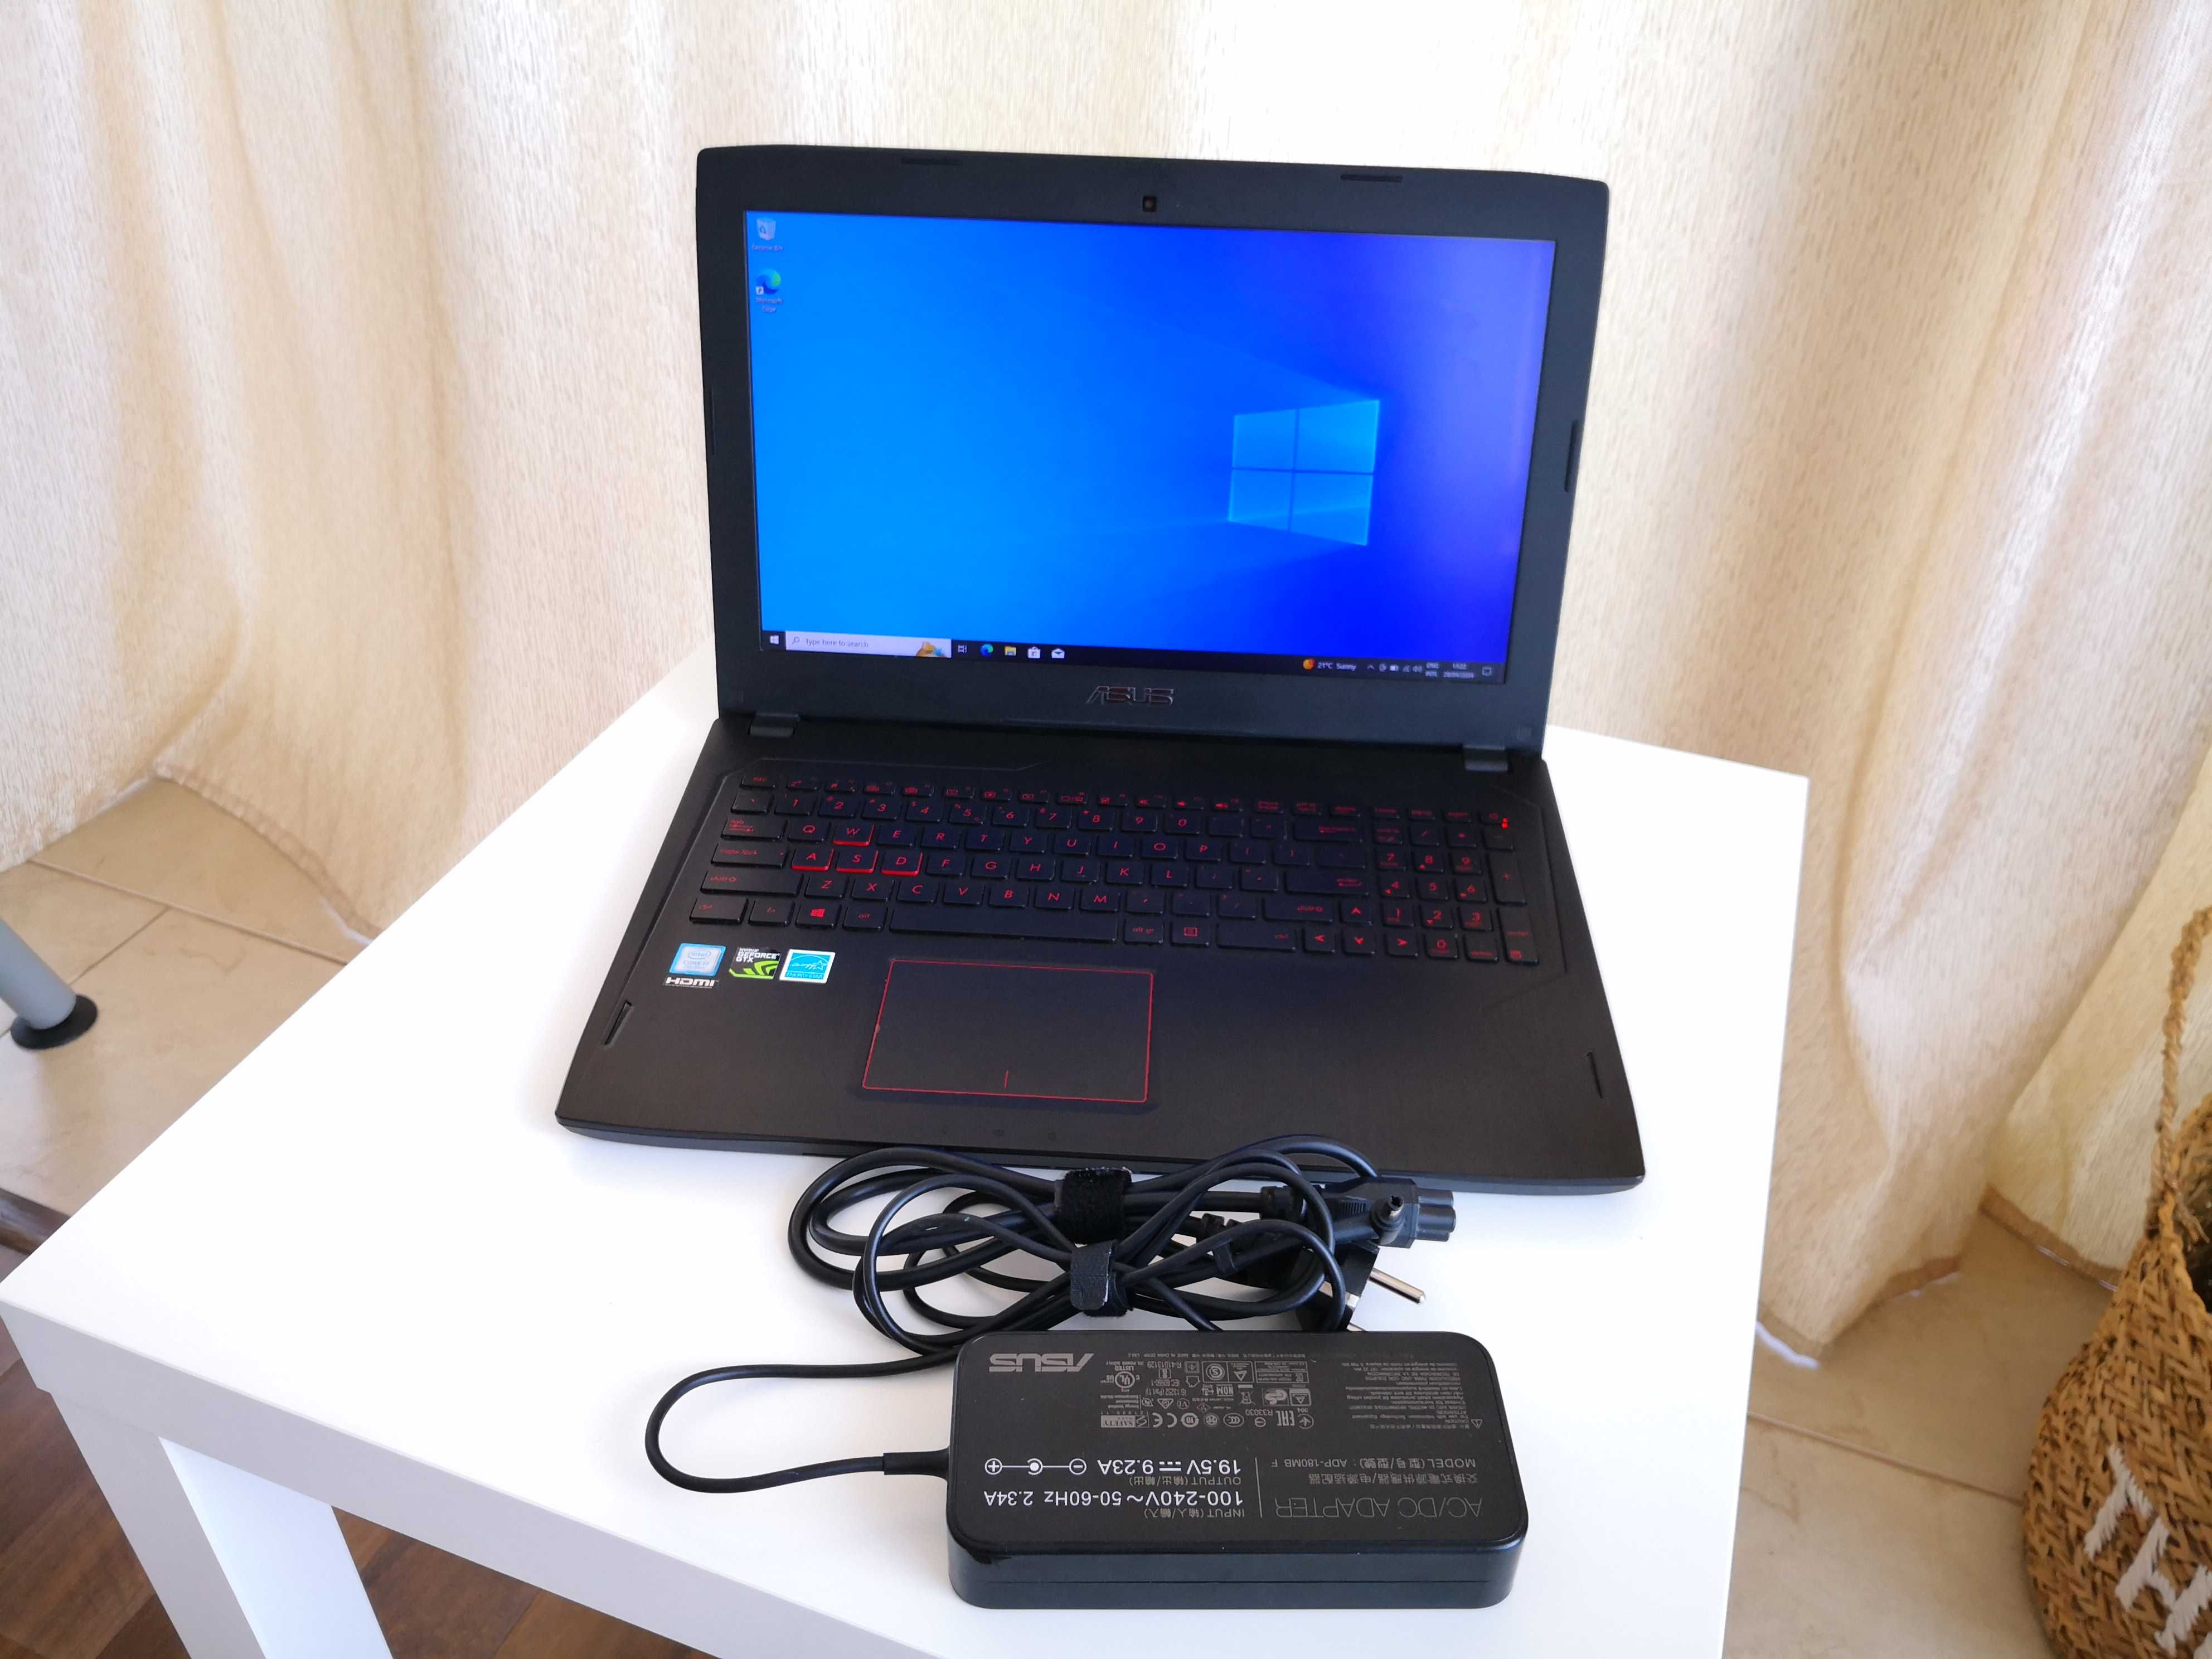 Vand Laptop ASUS FX502VM, 15.6", i7, GTX 1060, HDD 256GB + HDD 1TB